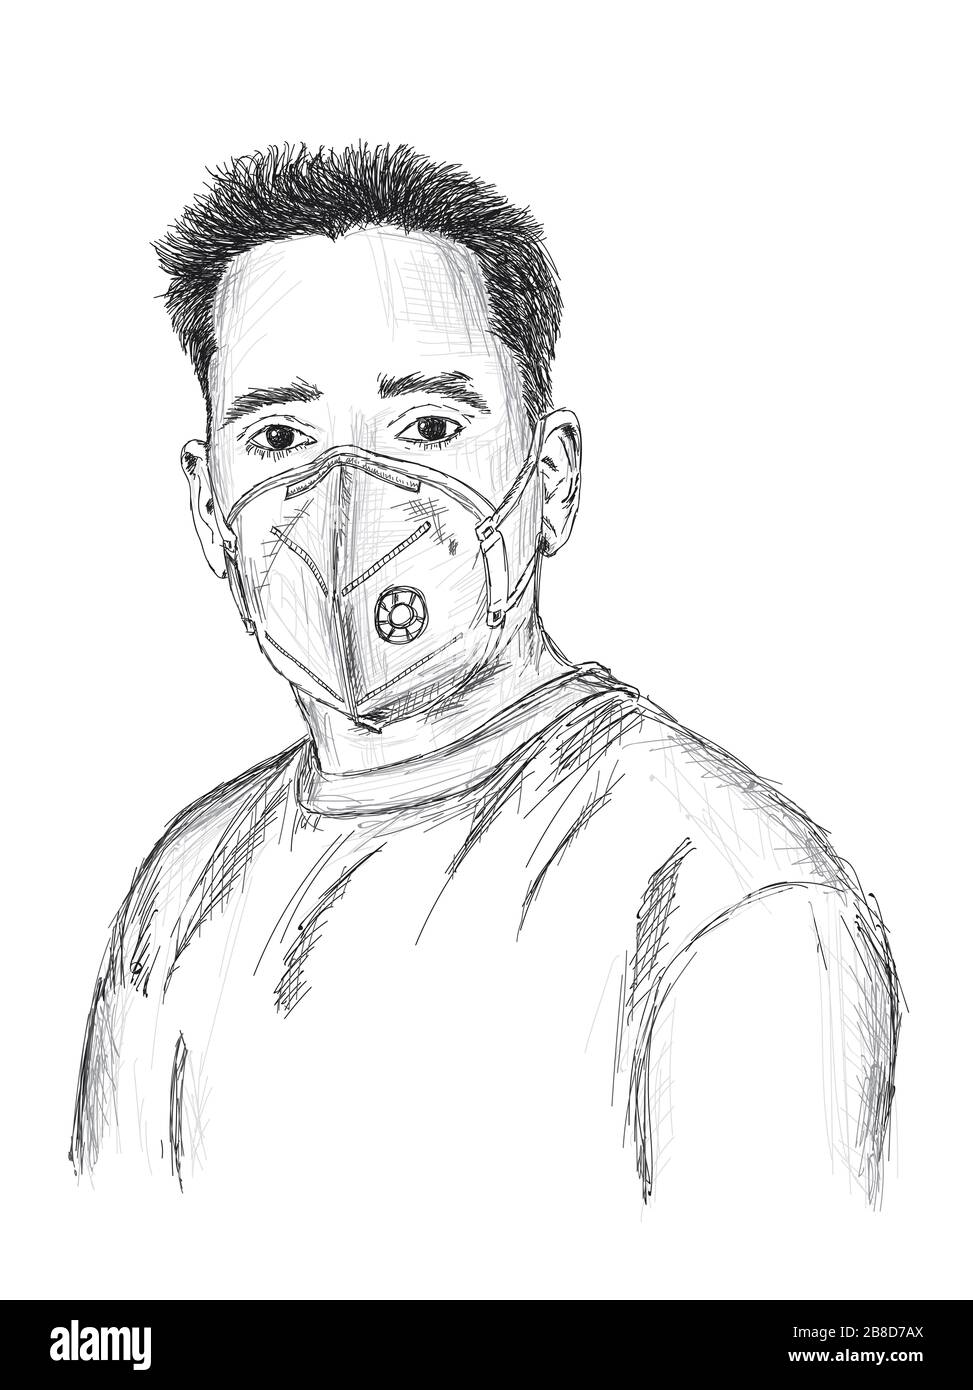 Mann mit Maske zum Schutz vor Viren, Staub, Verschmutzung und Smog - Vektor-Abbildung Stockfoto